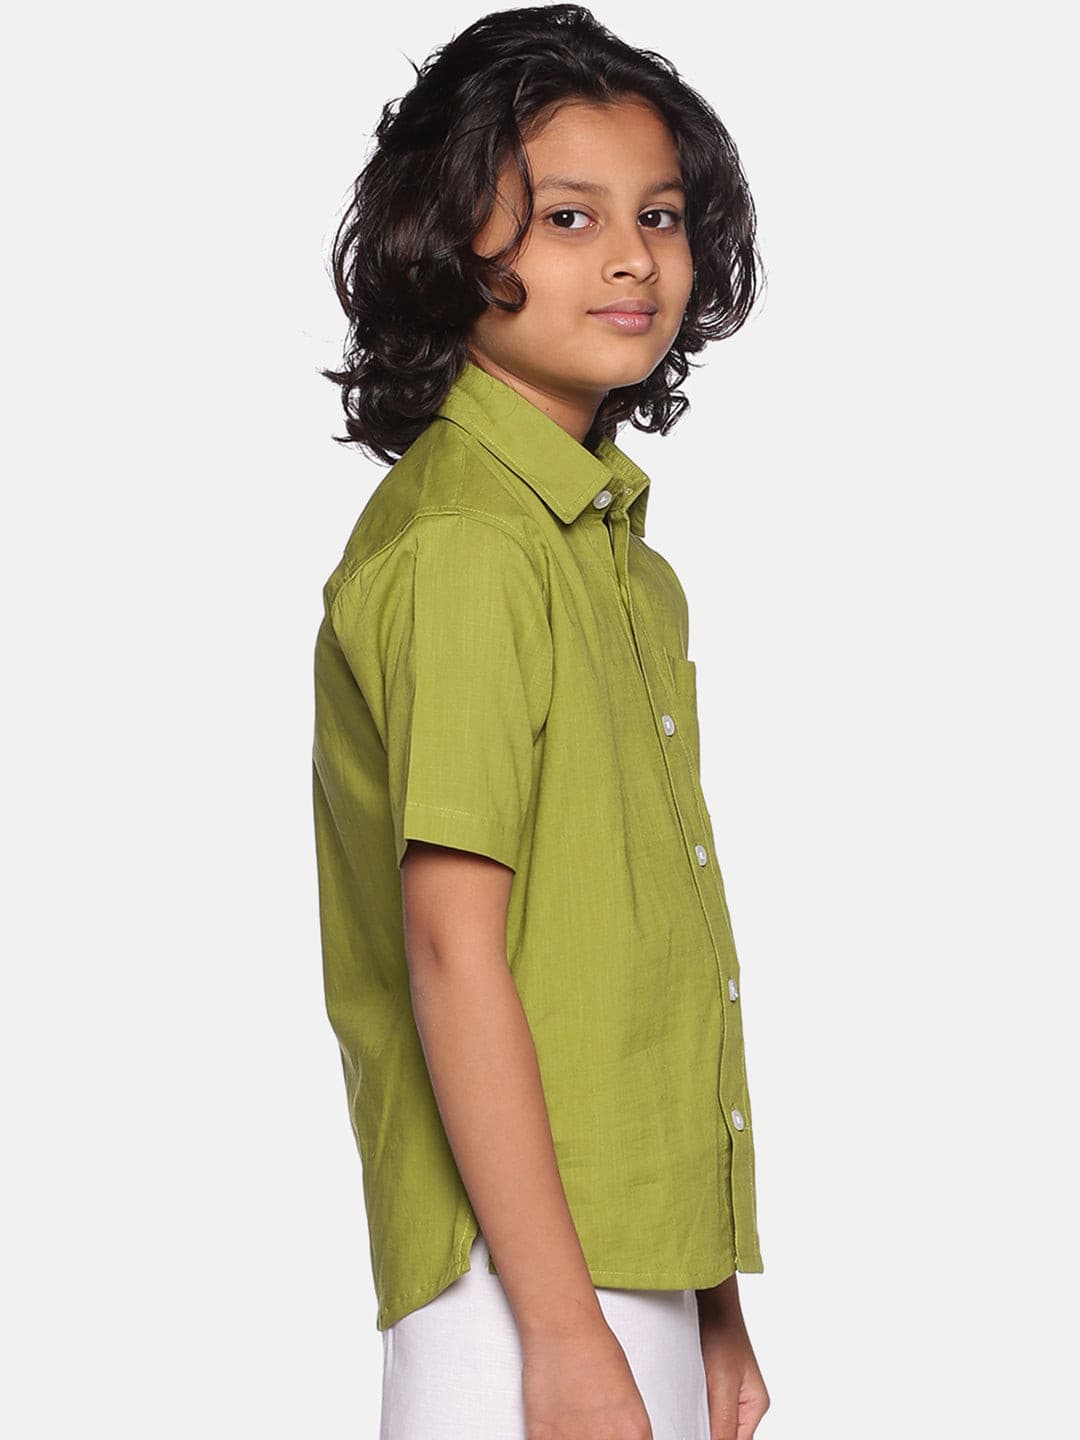 Boys Green Colour Cotton Shirt.